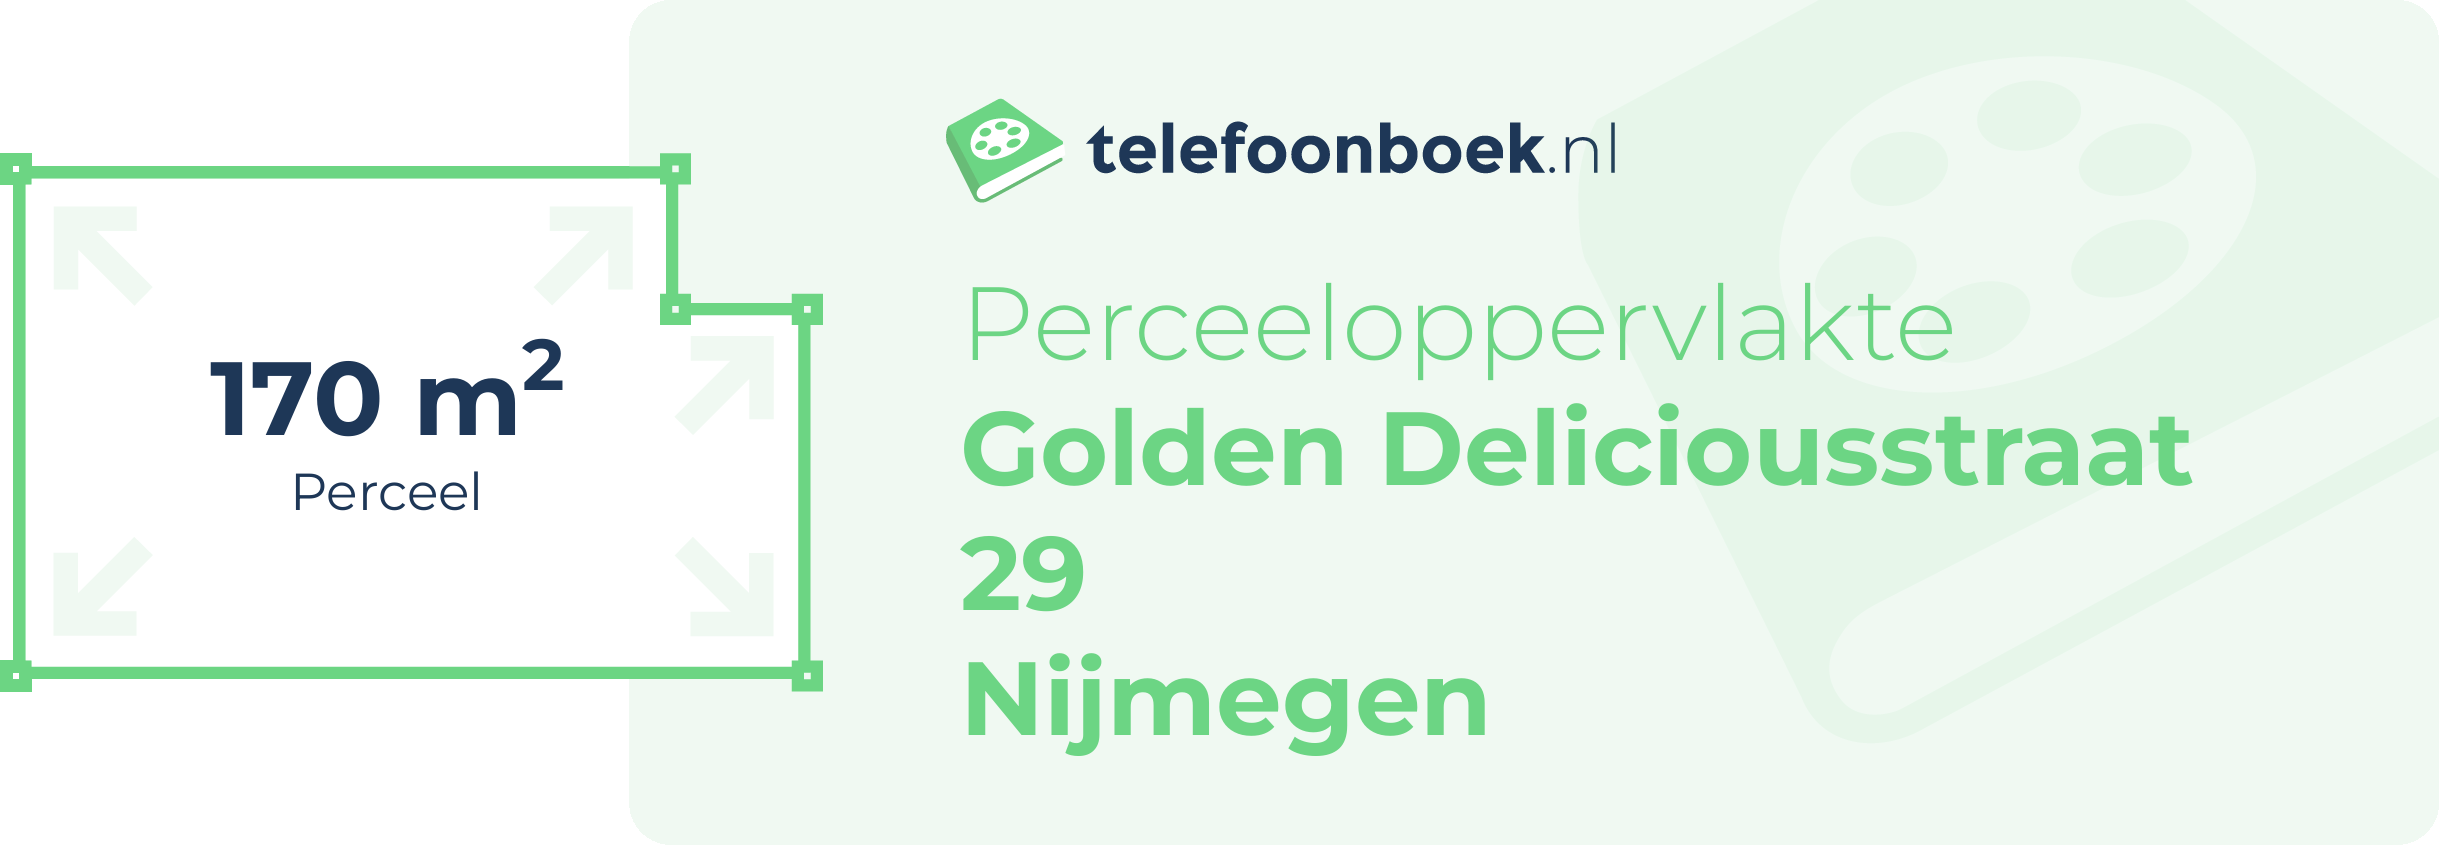 Perceeloppervlakte Golden Deliciousstraat 29 Nijmegen